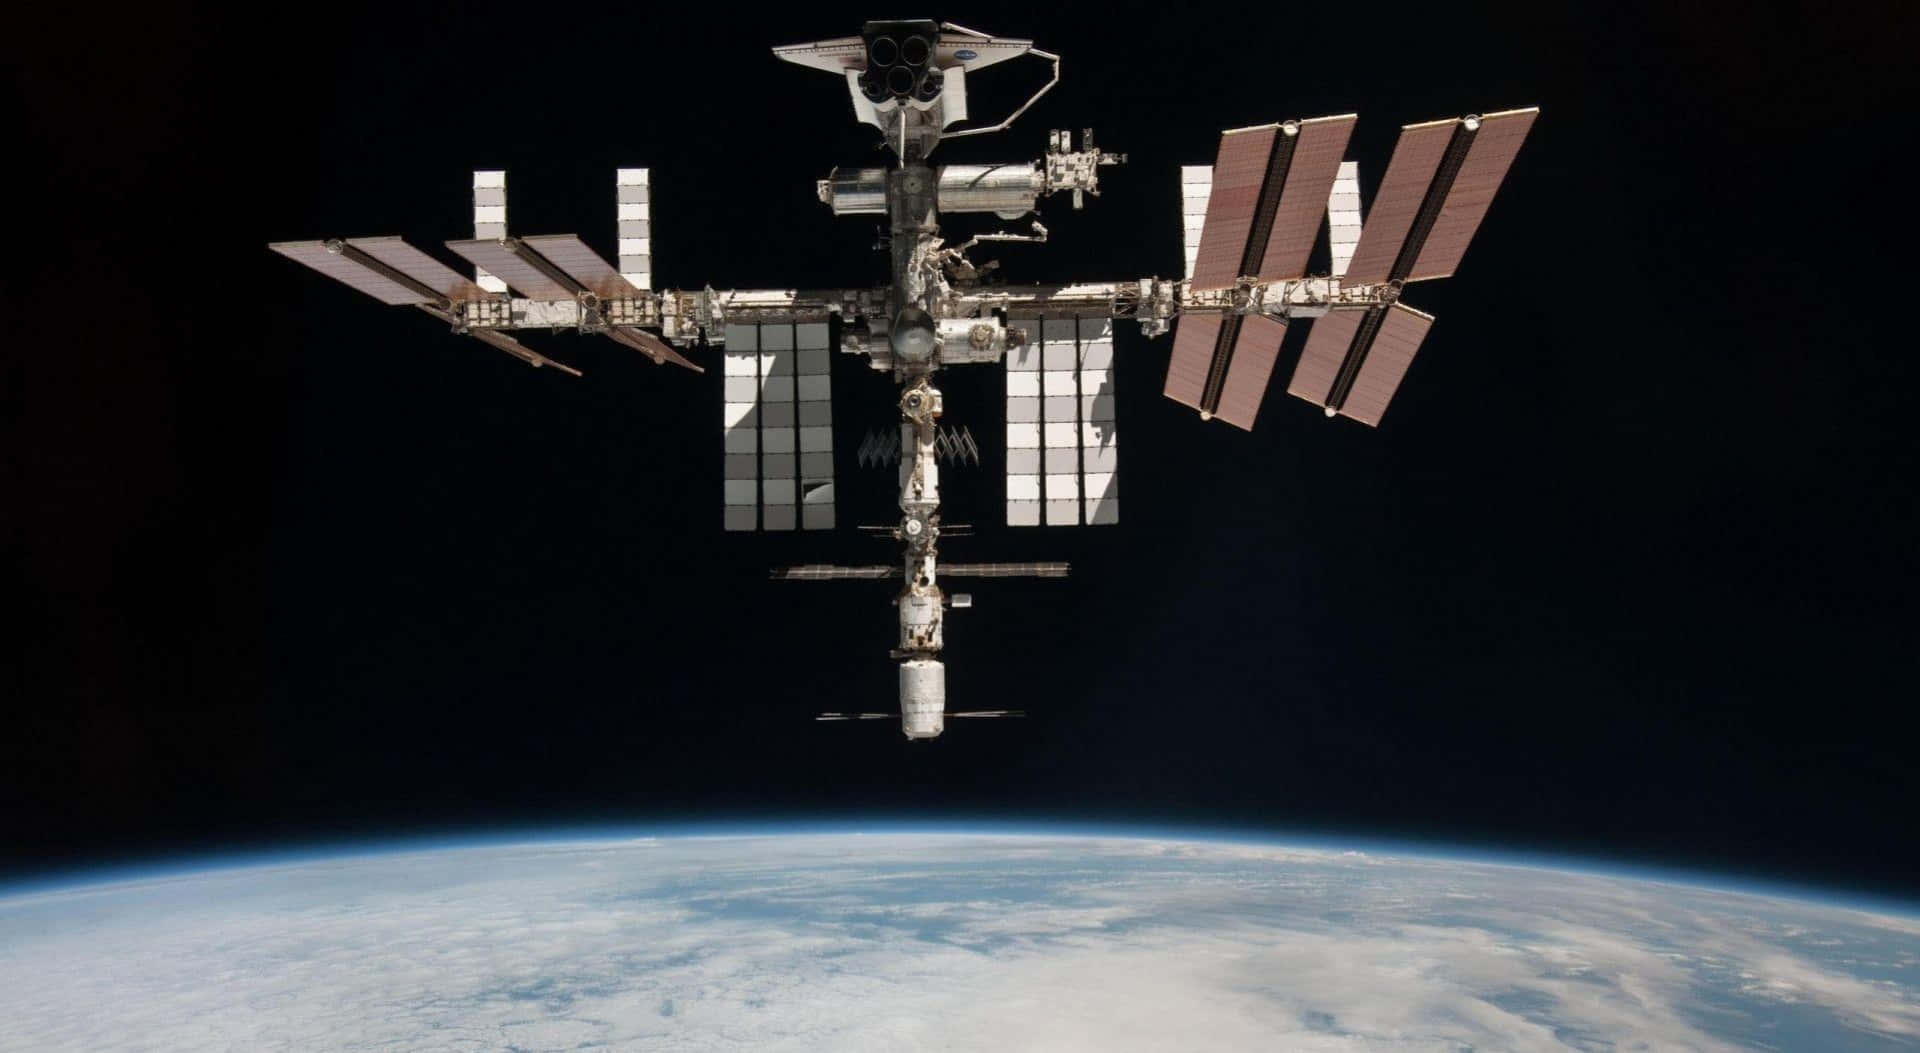 Laestación Espacial Internacional Es Vista Desde El Espacio.